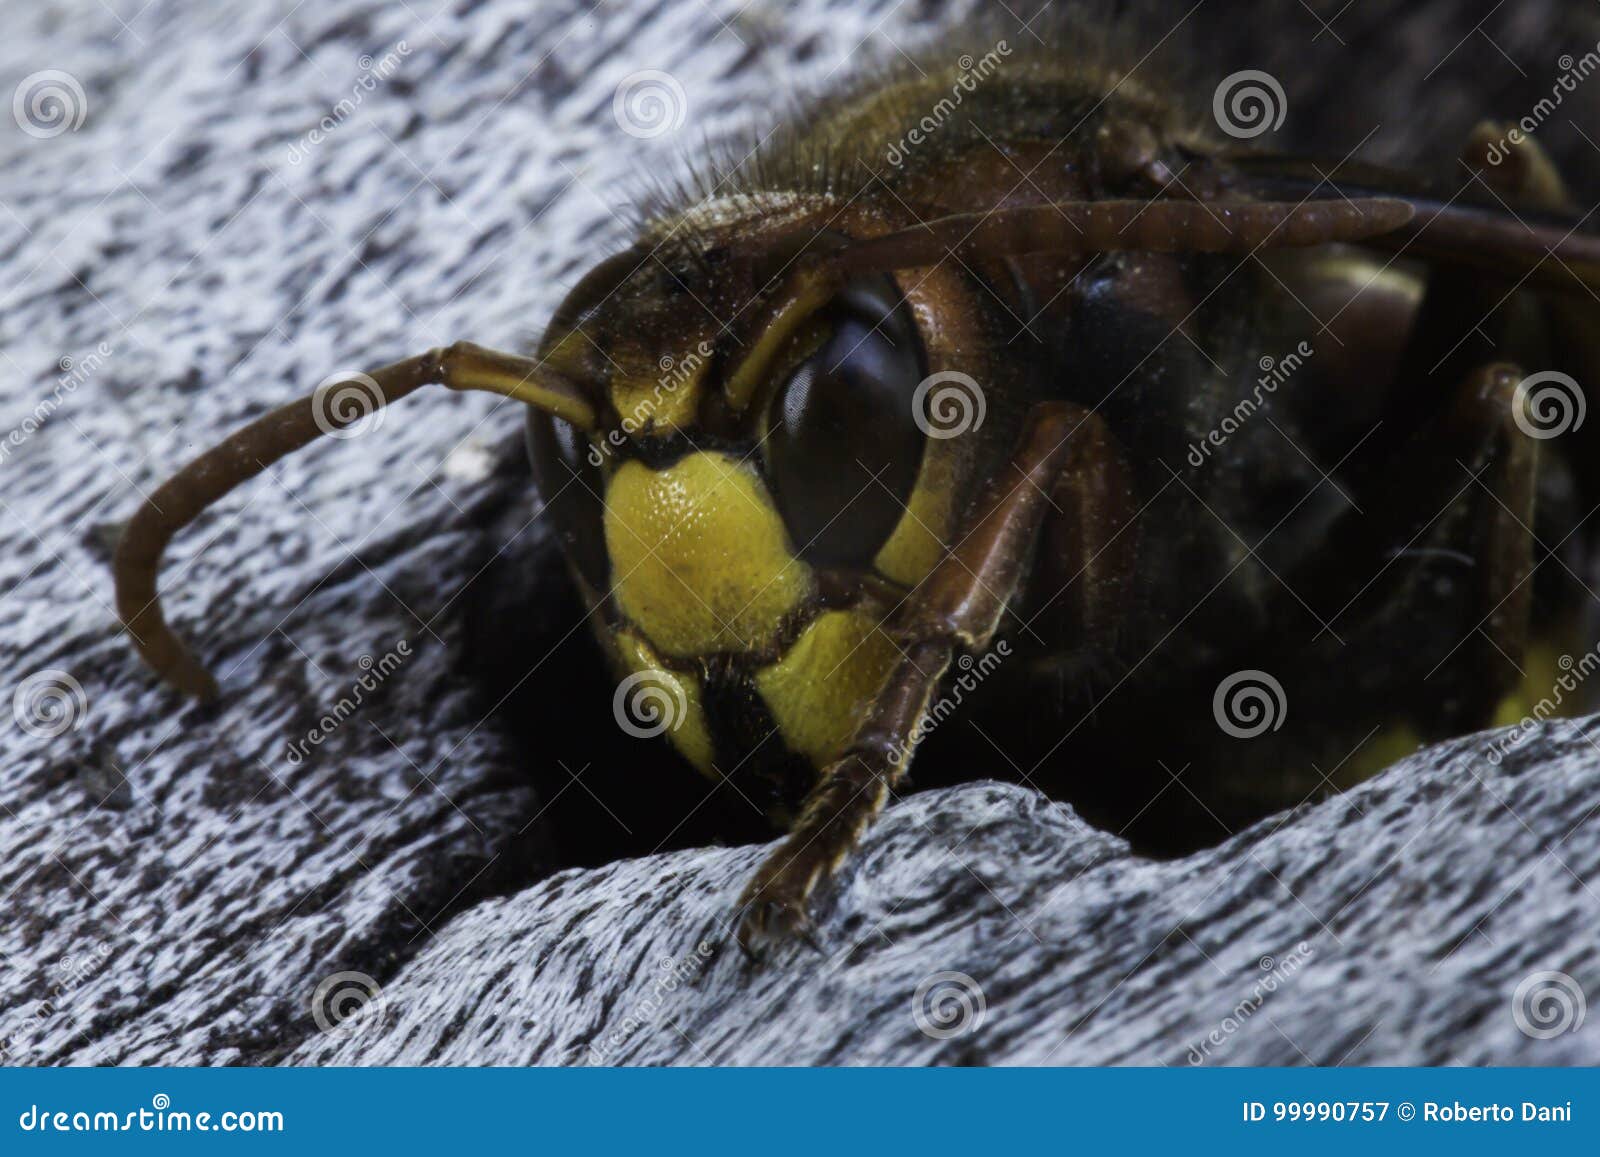 european hornet